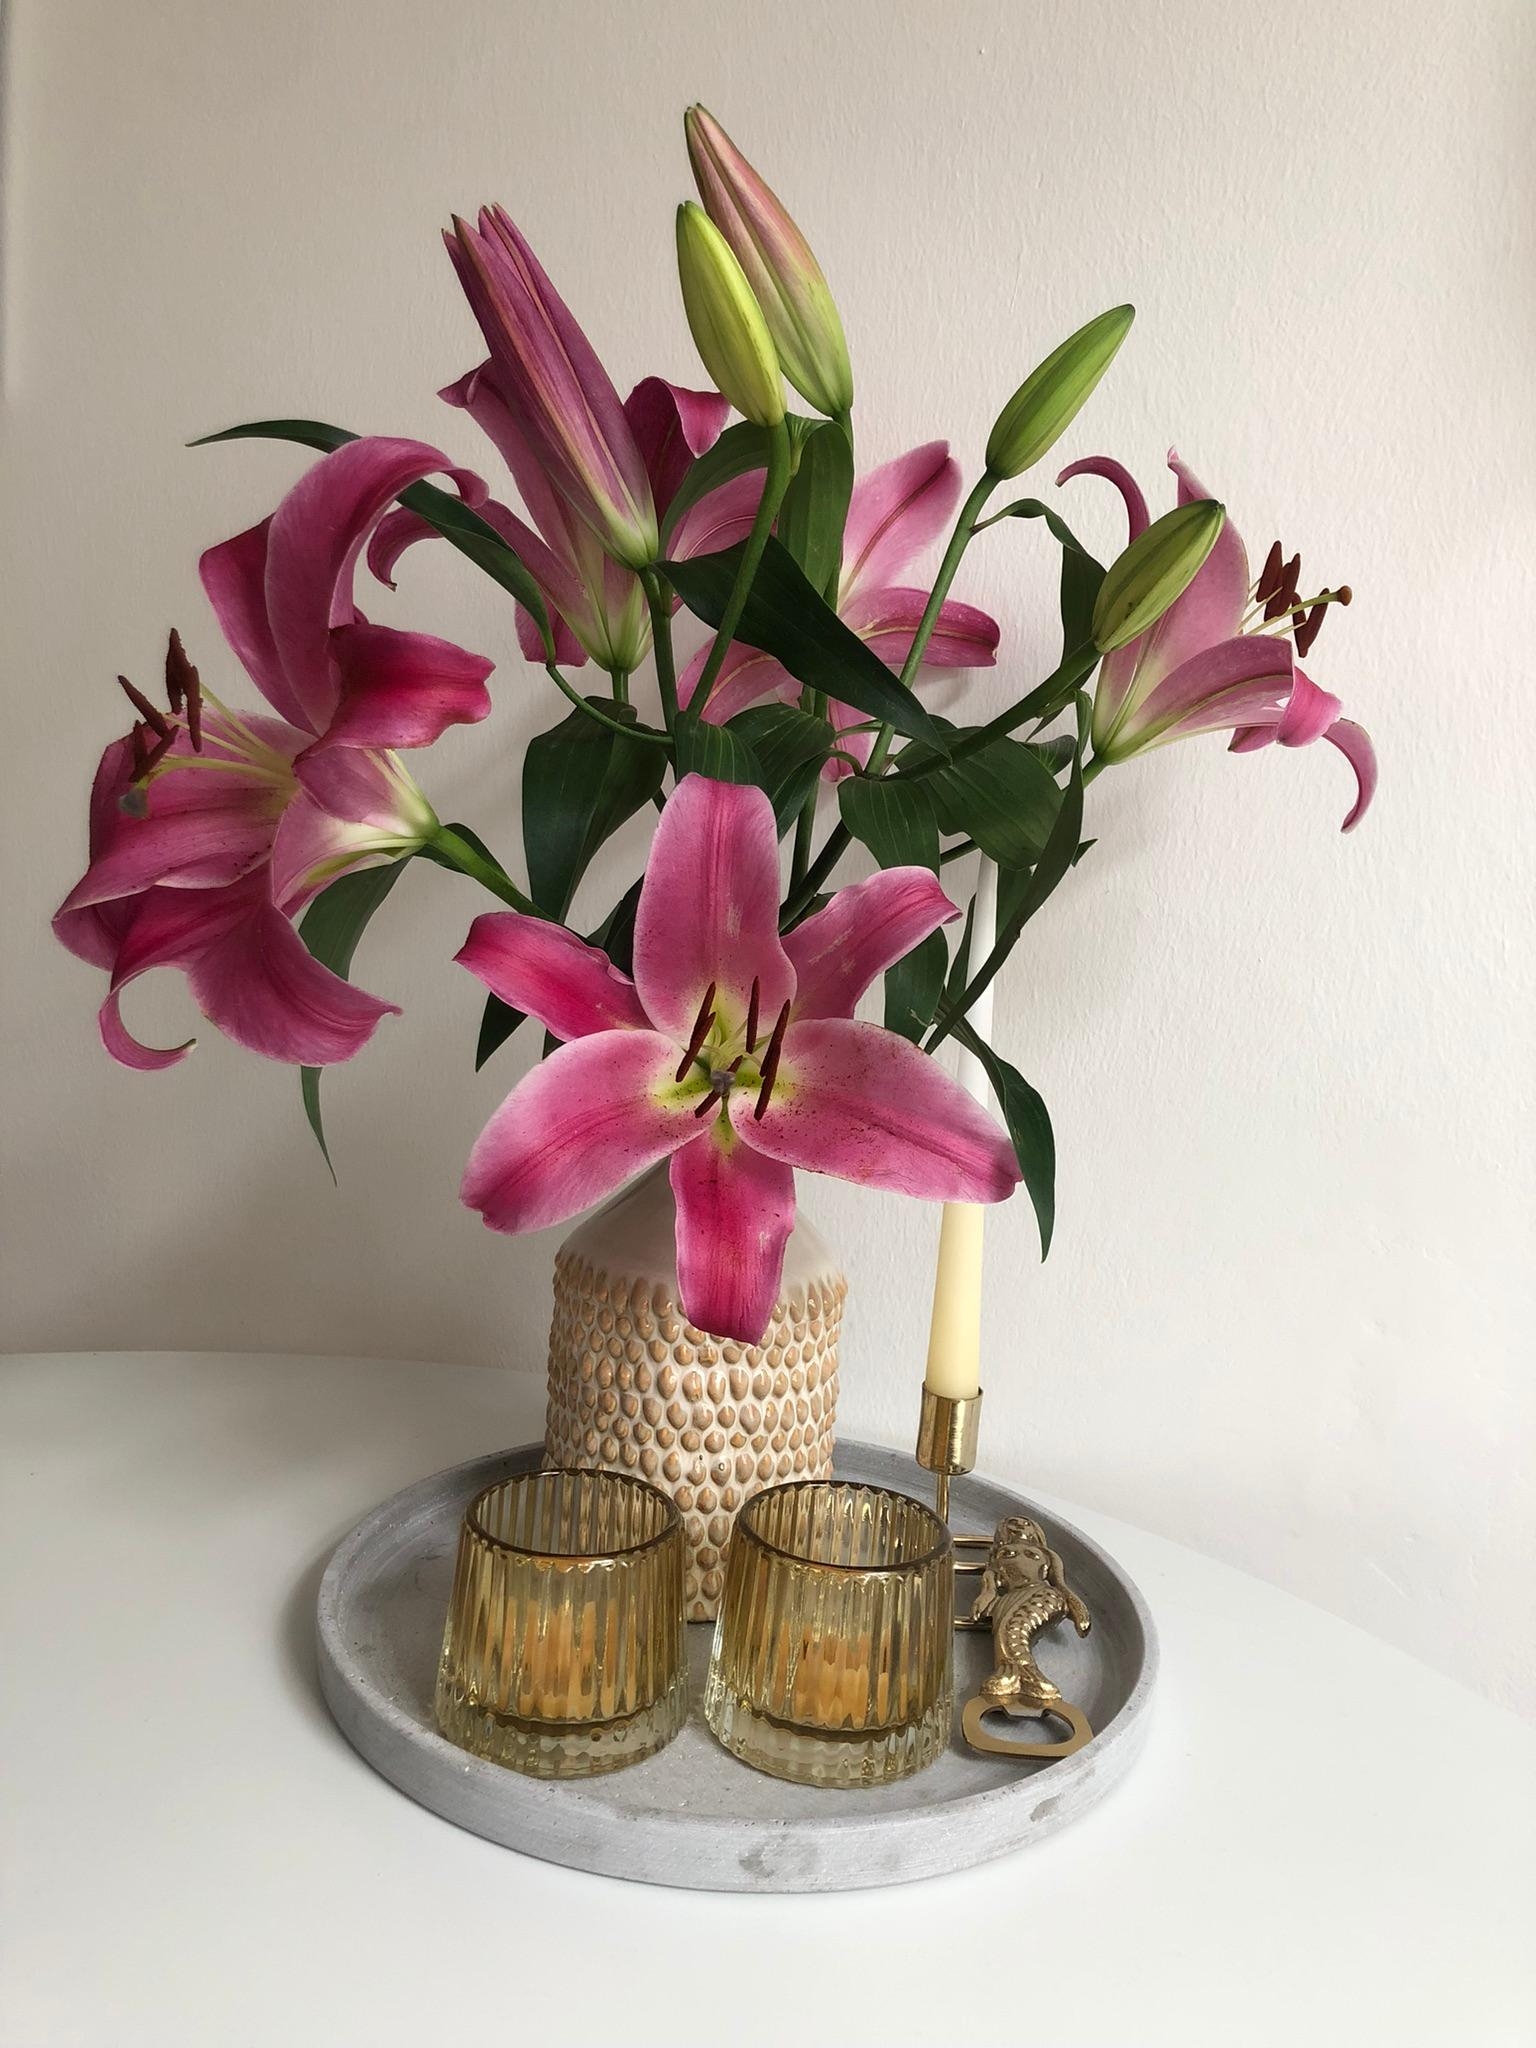 Hach, ich liebe Lilien und meine neue Vase 💕💐
#lilien #blumenstrauß #blumen #tischdeko #frischeblumen #vase 
